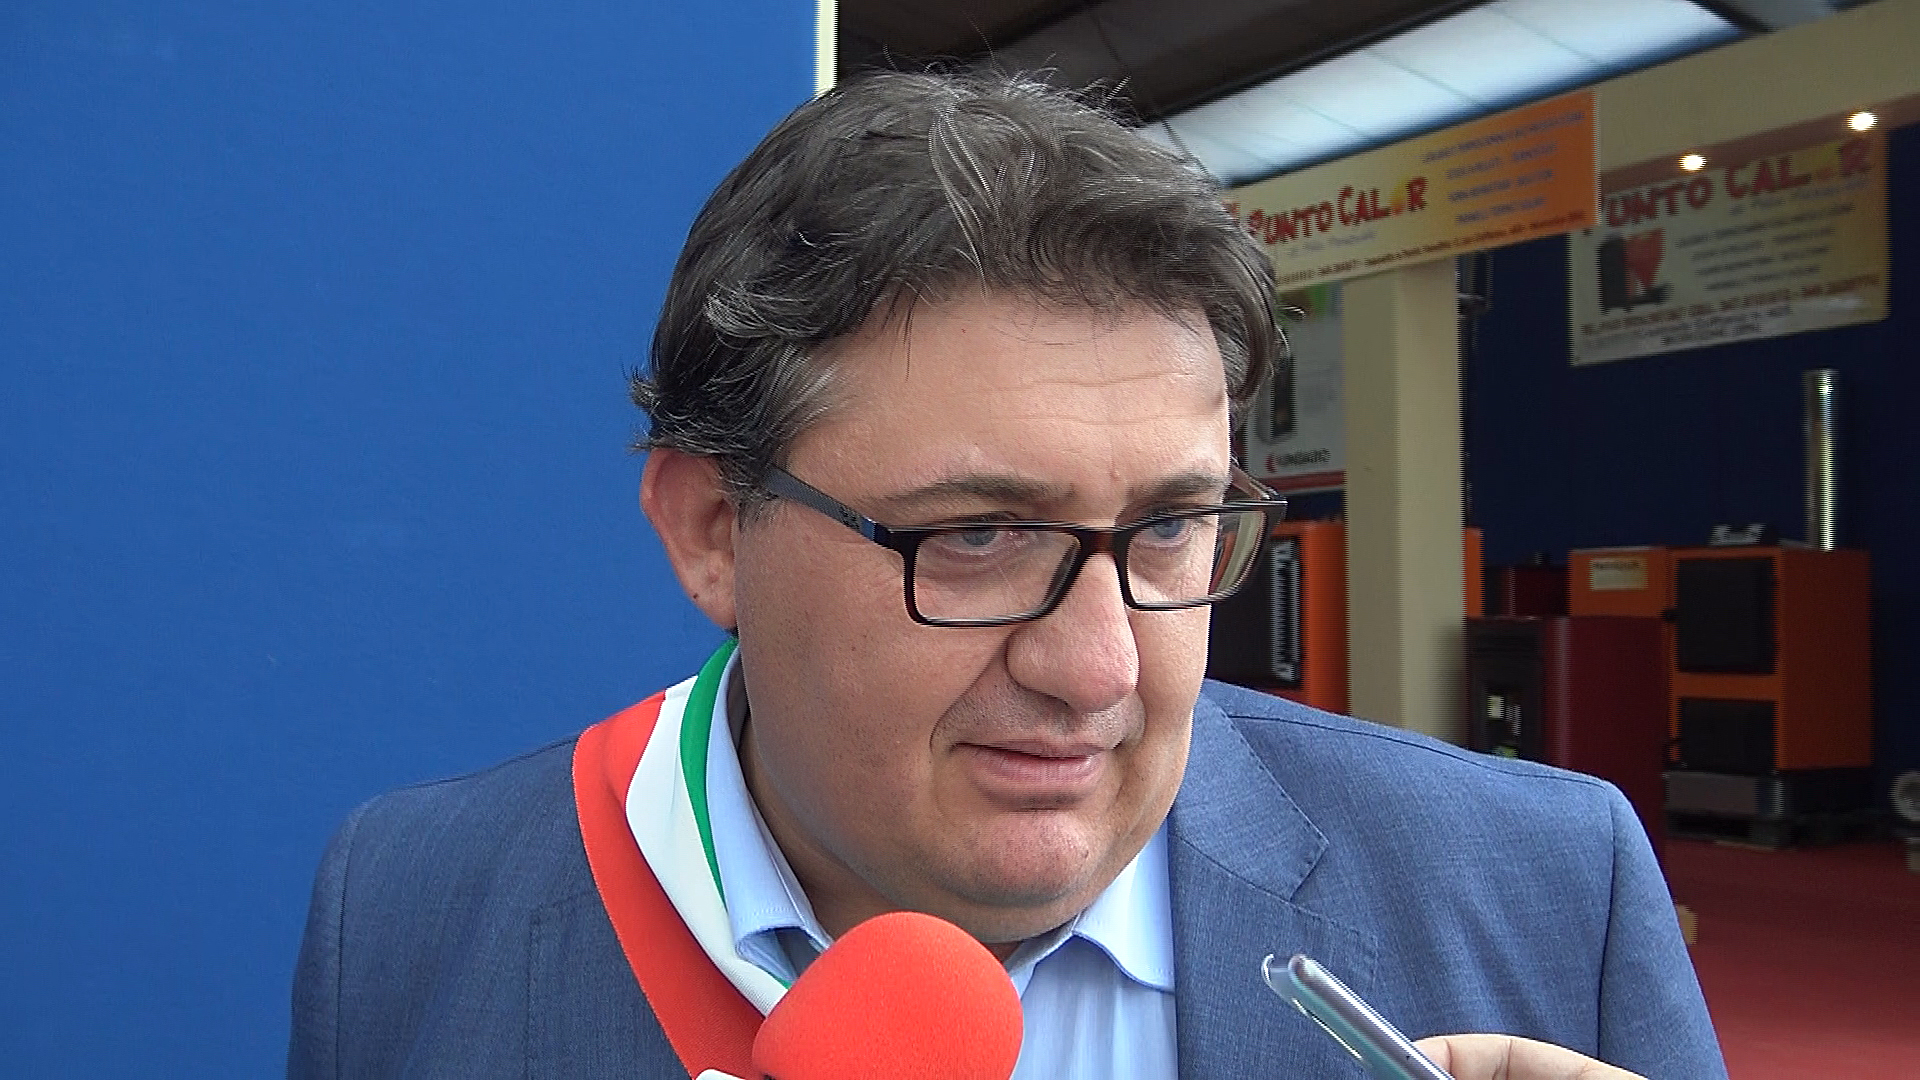 Casalduni, il sindaco Iacovella: “In questi anni abbiamo garantito legalità e correttezza delle azioni amministrative”